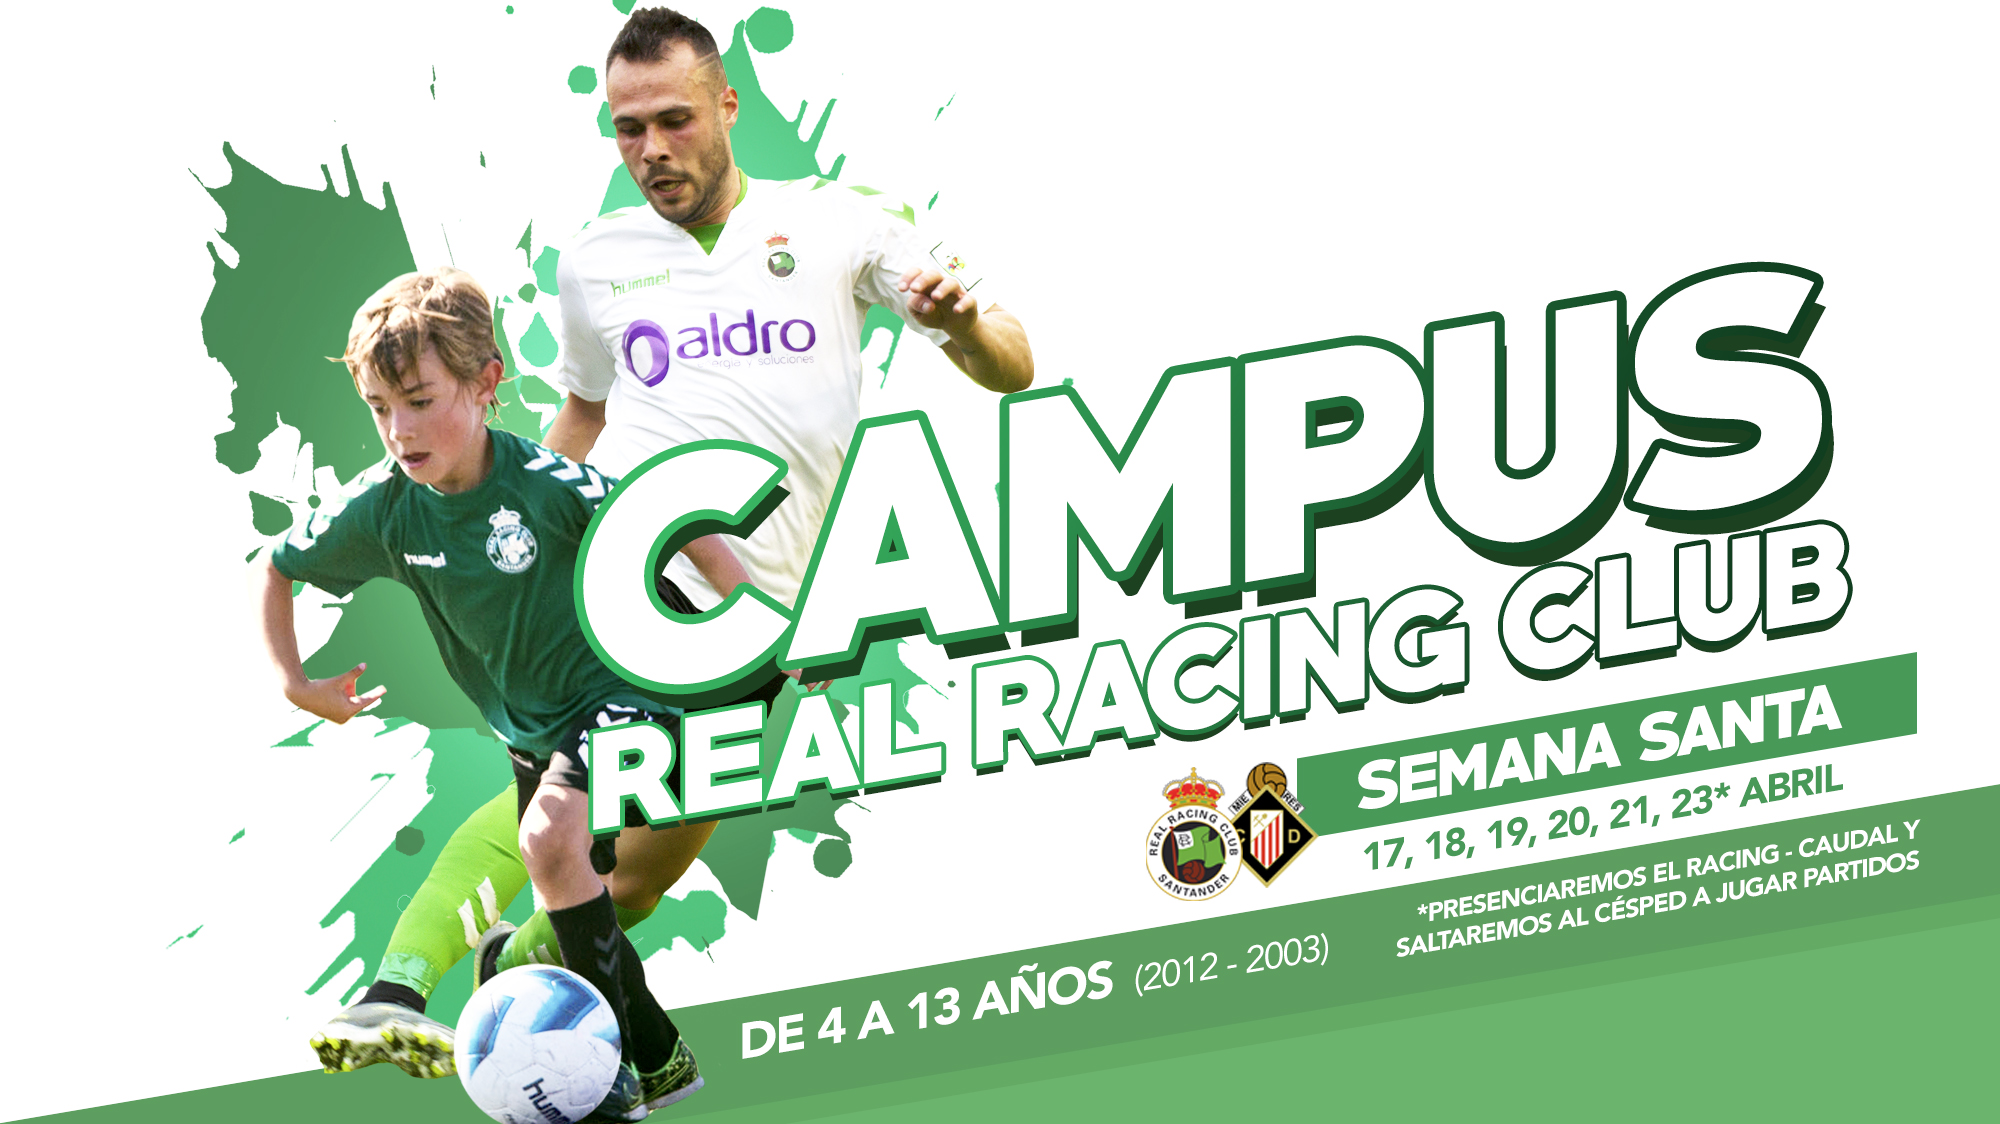 II Campus de fútbol - Club de Campo y Fundación Racing Club de Ferrol